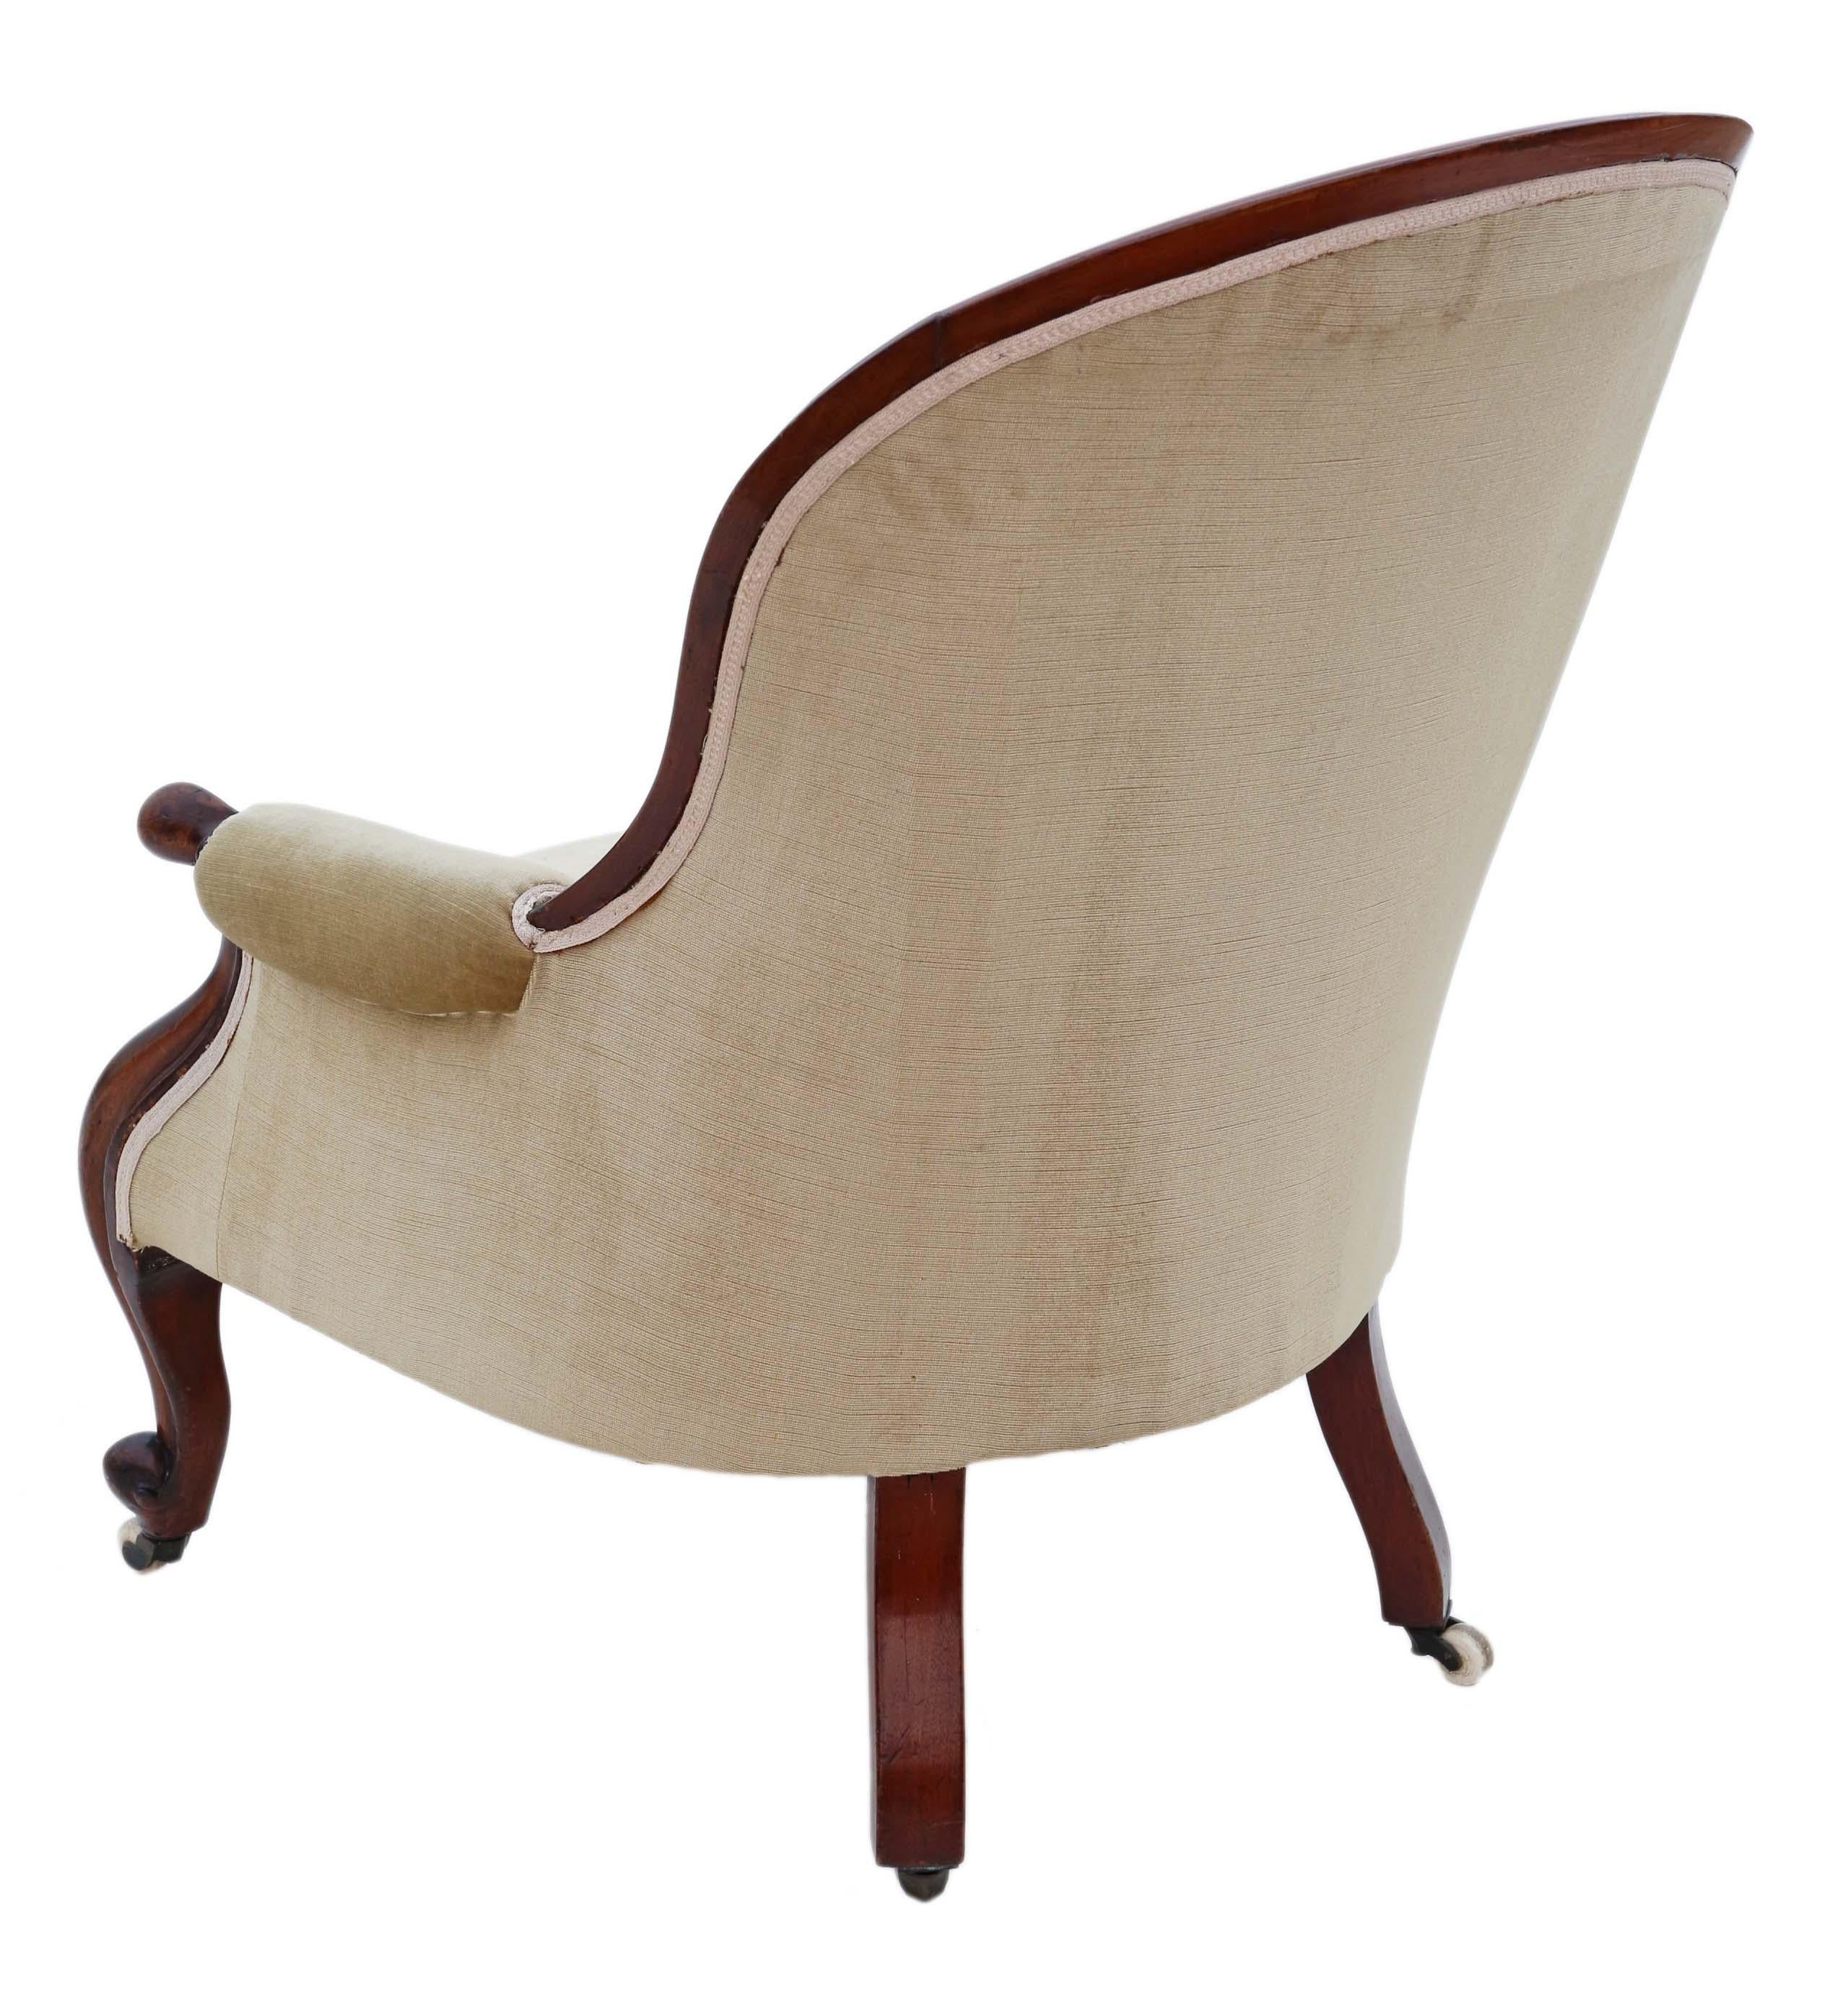 Antike Qualität viktorianischen Mahagoni Löffel zurück Slipper Sessel C1870.

Solide, keine losen Verbindungen und kein Holzwurm. Voller Alter, Charakter und Charme. Ein sehr dekorativer Stuhl. Die Polsterung mit Knöpfen ist nicht neu, hat aber